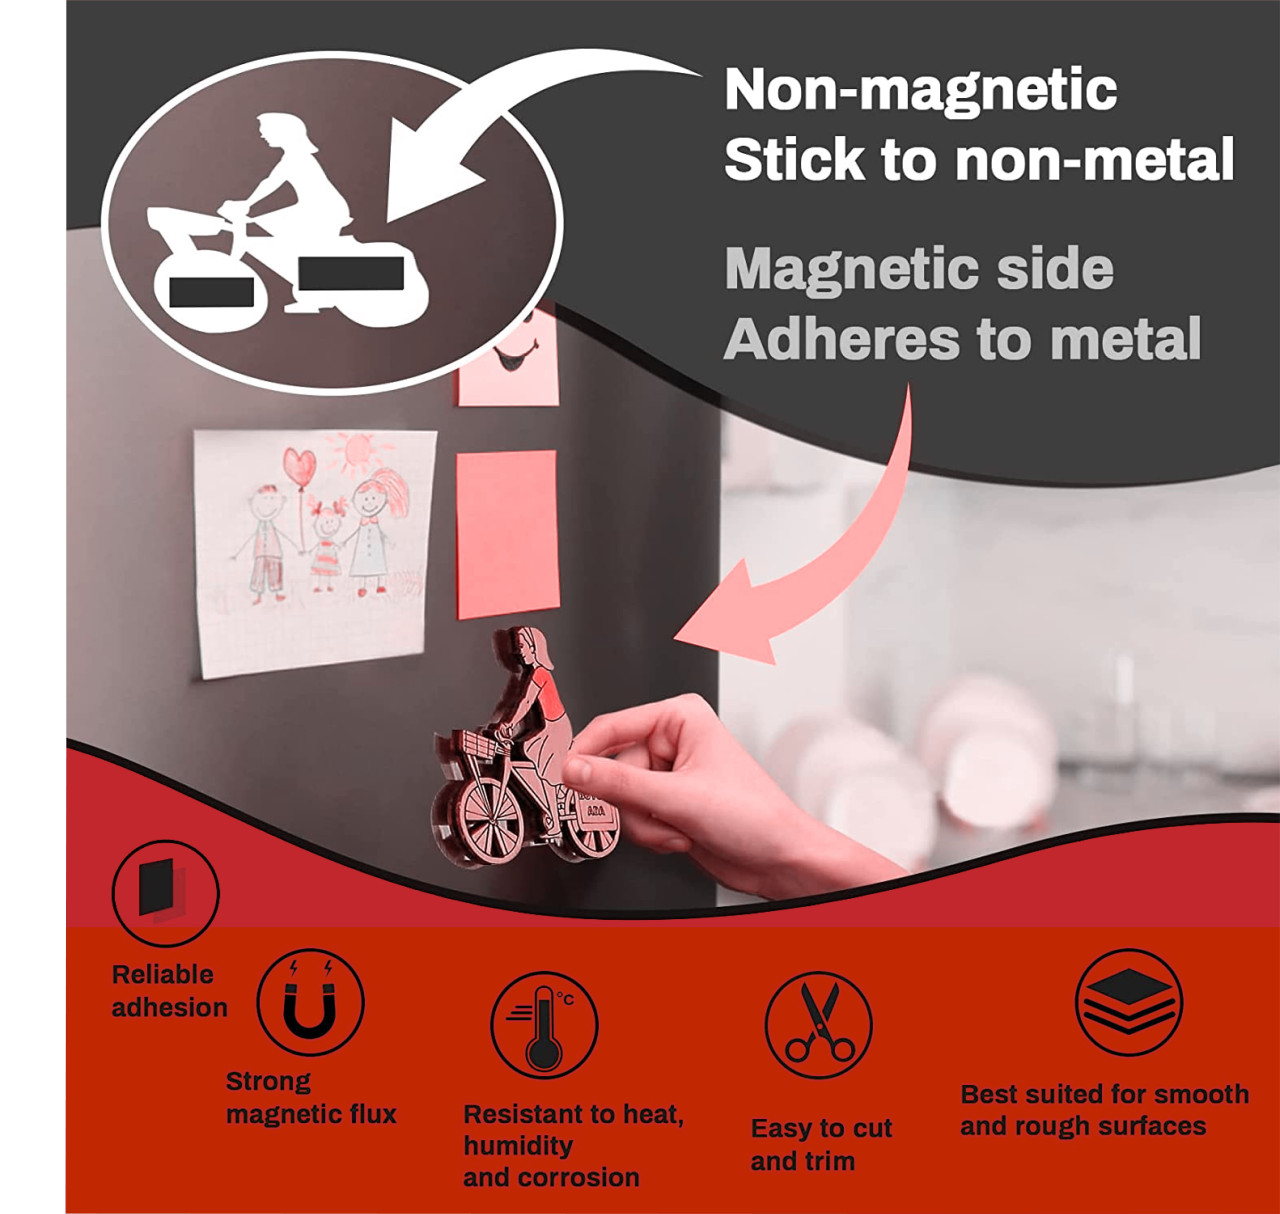 Rotolo nastro adesivo magnetico - Striscia calamitata con nastro adesivo 3m  ideale per fai da te, progetti